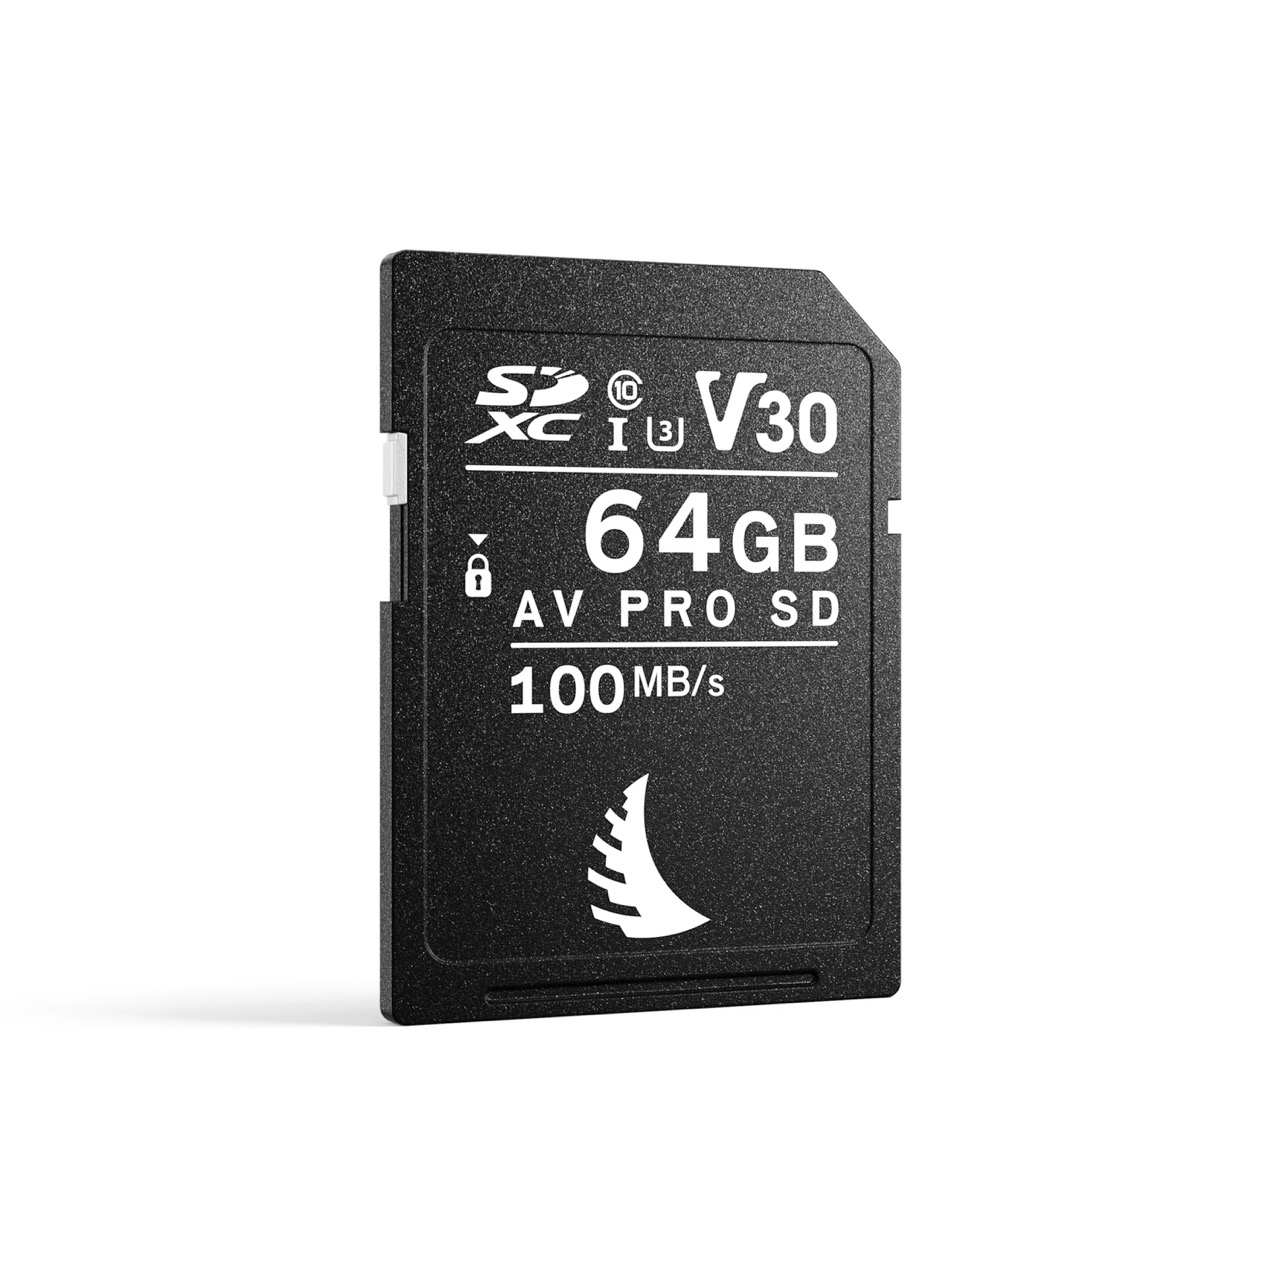 Angelbird AV PRO SD V30 64GB Speicherkarte, Frontalansicht leicht schräg